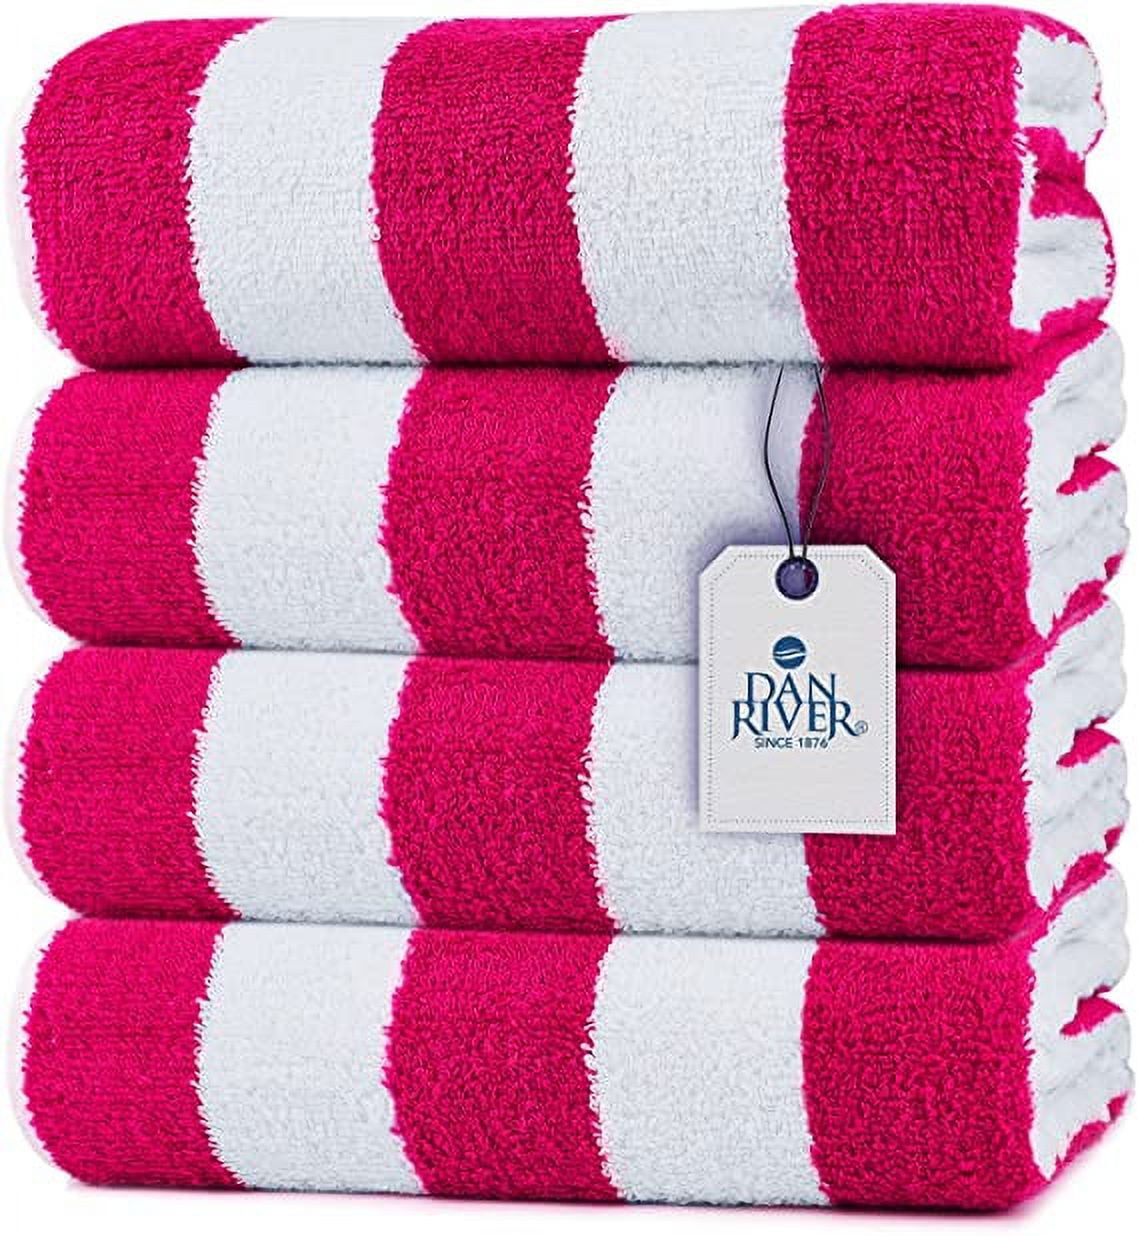 DAN RIVER 100% Cotton Cabana Pool Towels| Bath Sheet Towel| Quick Dry ...